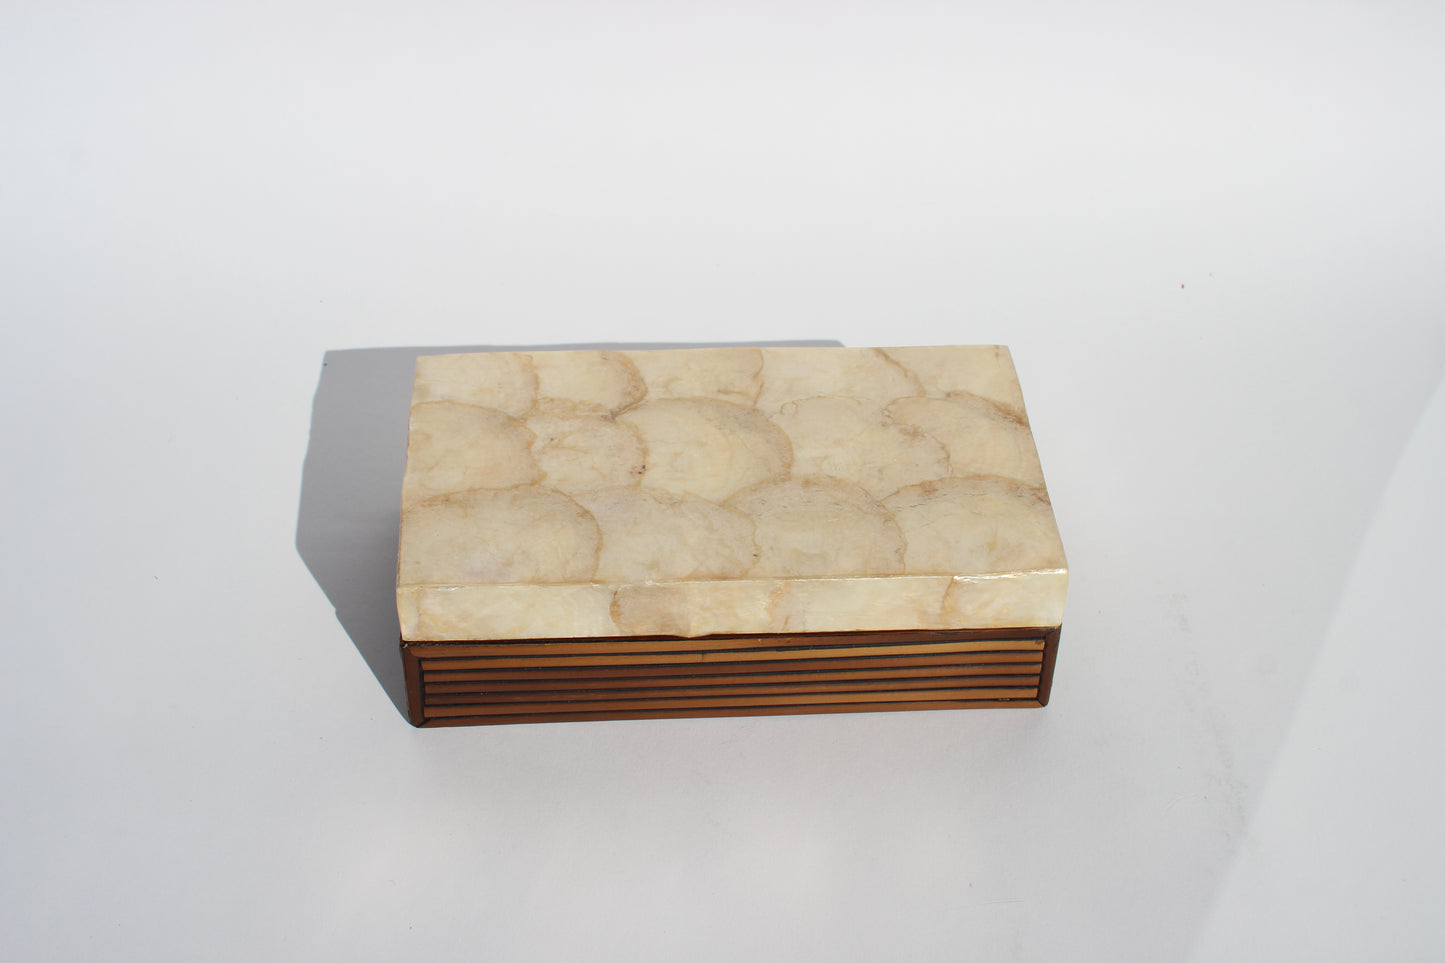 abalone shell + wood box